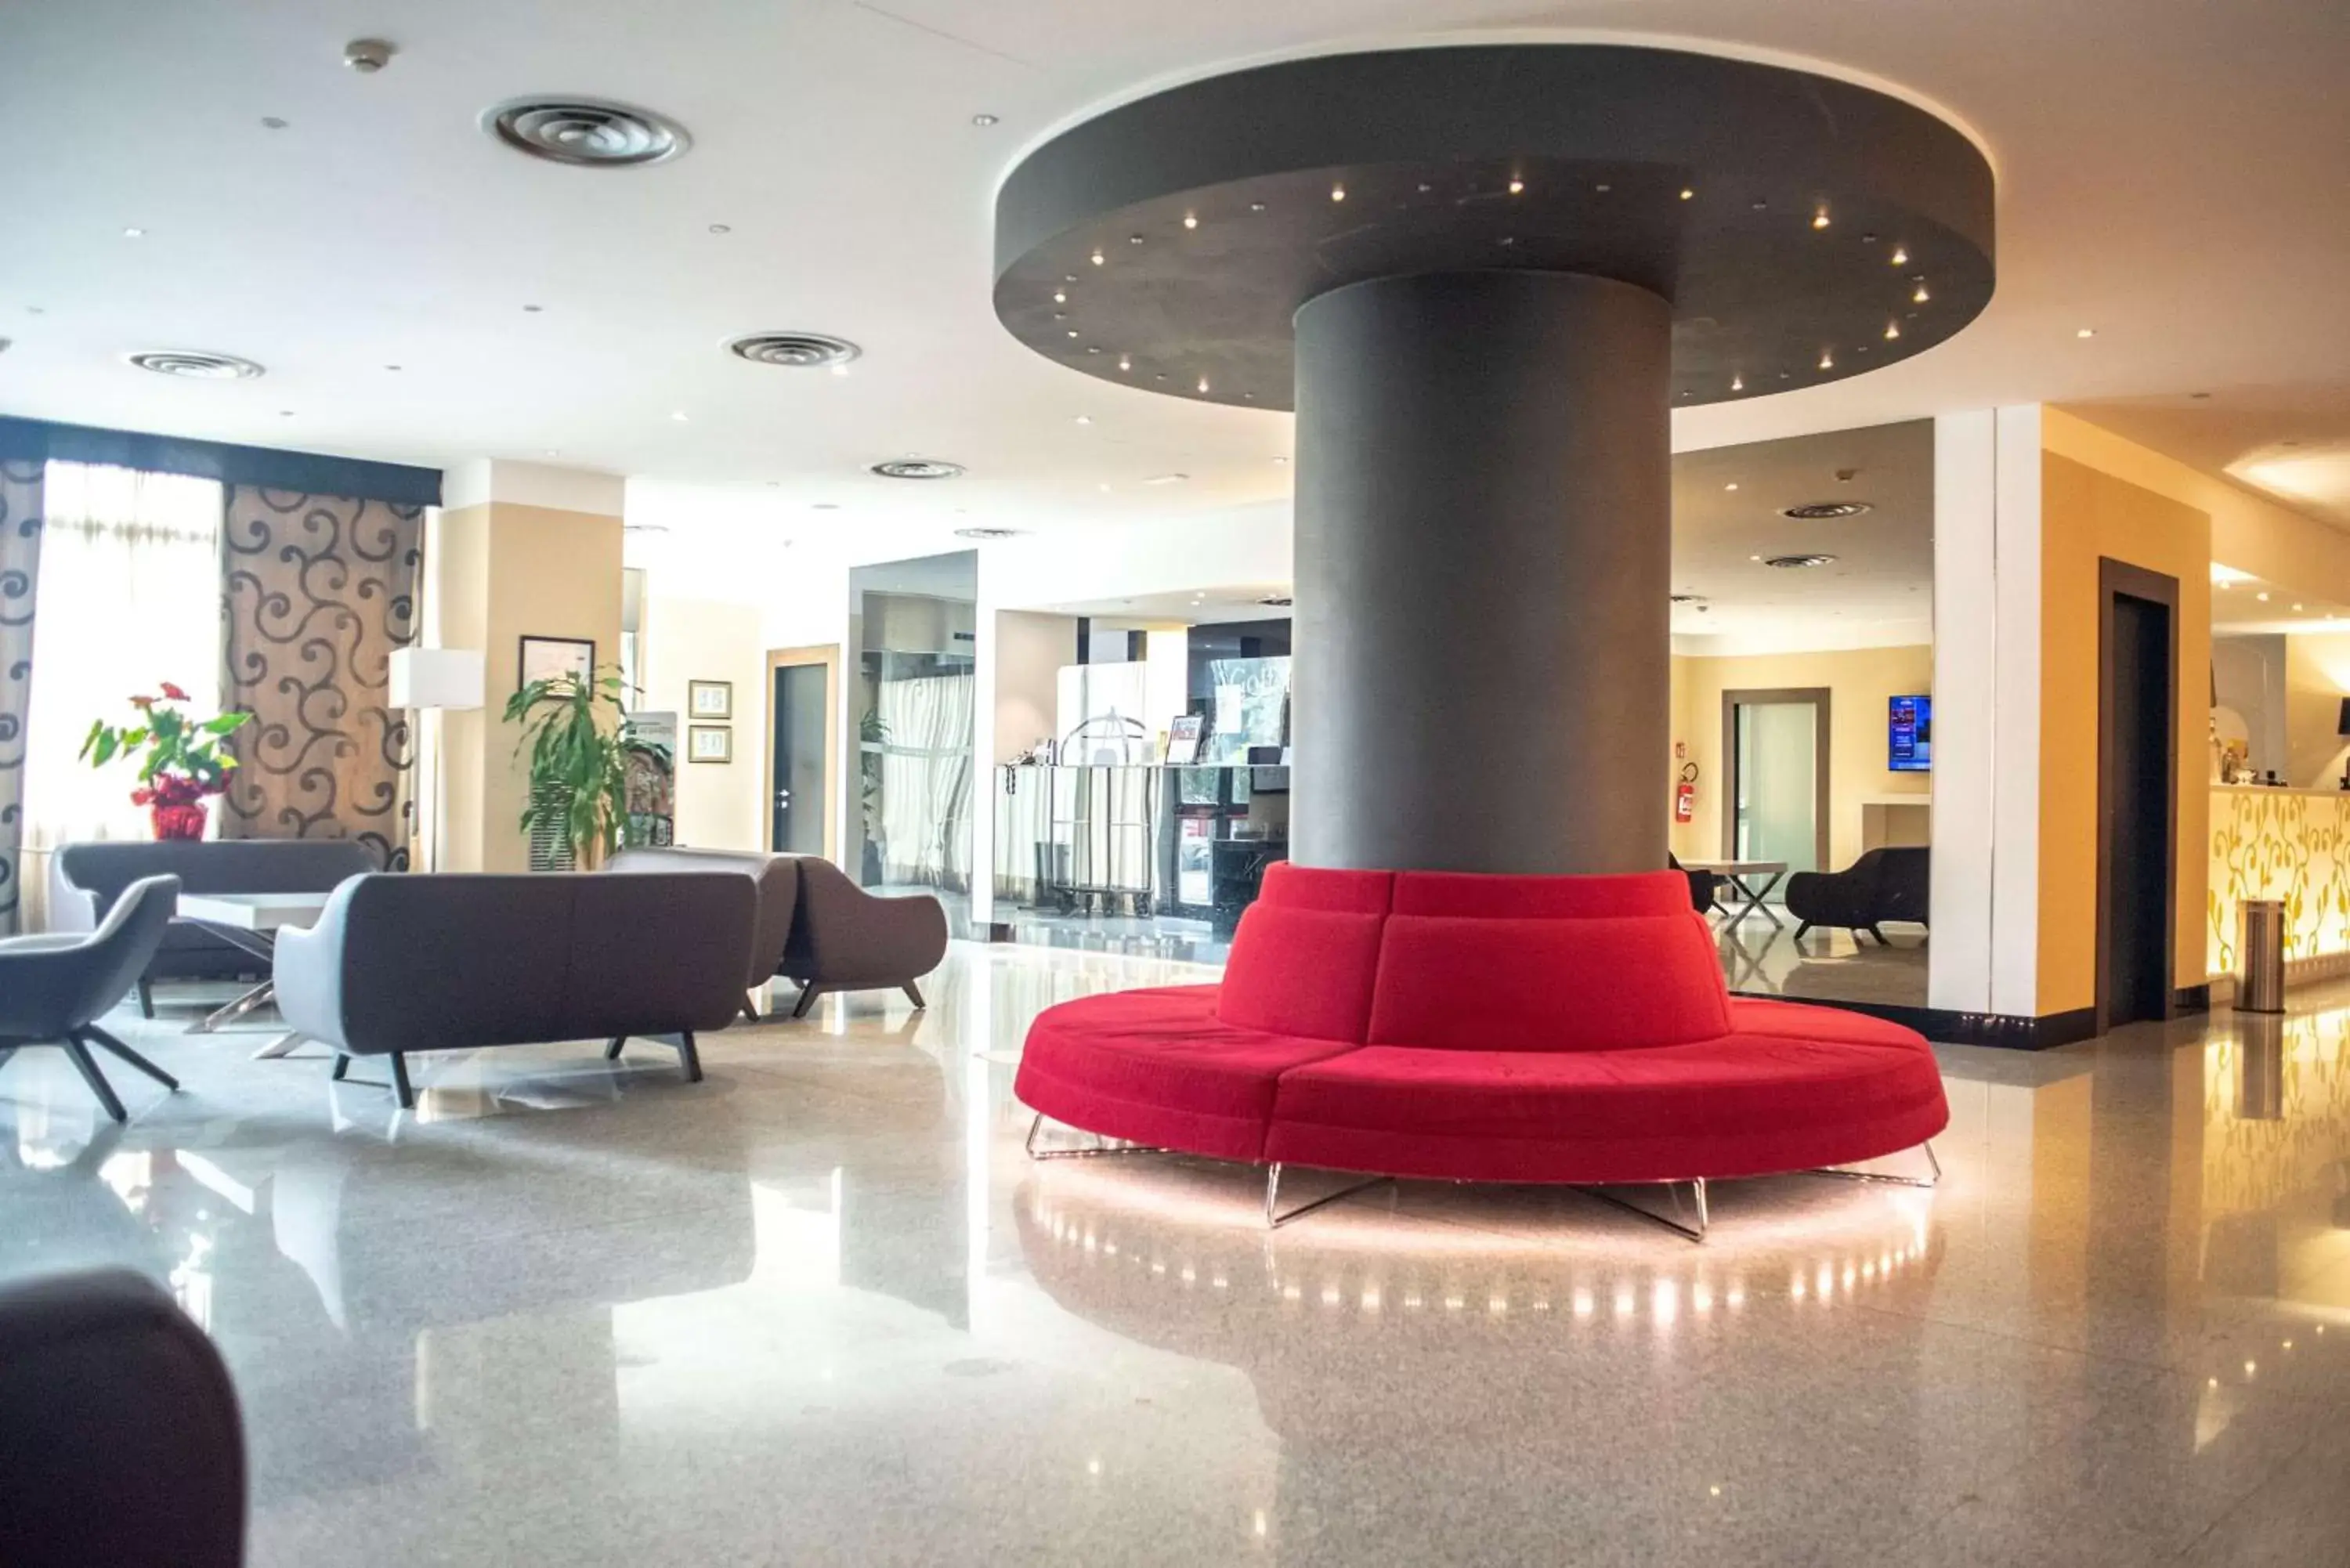 Lobby or reception, Lobby/Reception in Best Western Hotel Quattrotorri